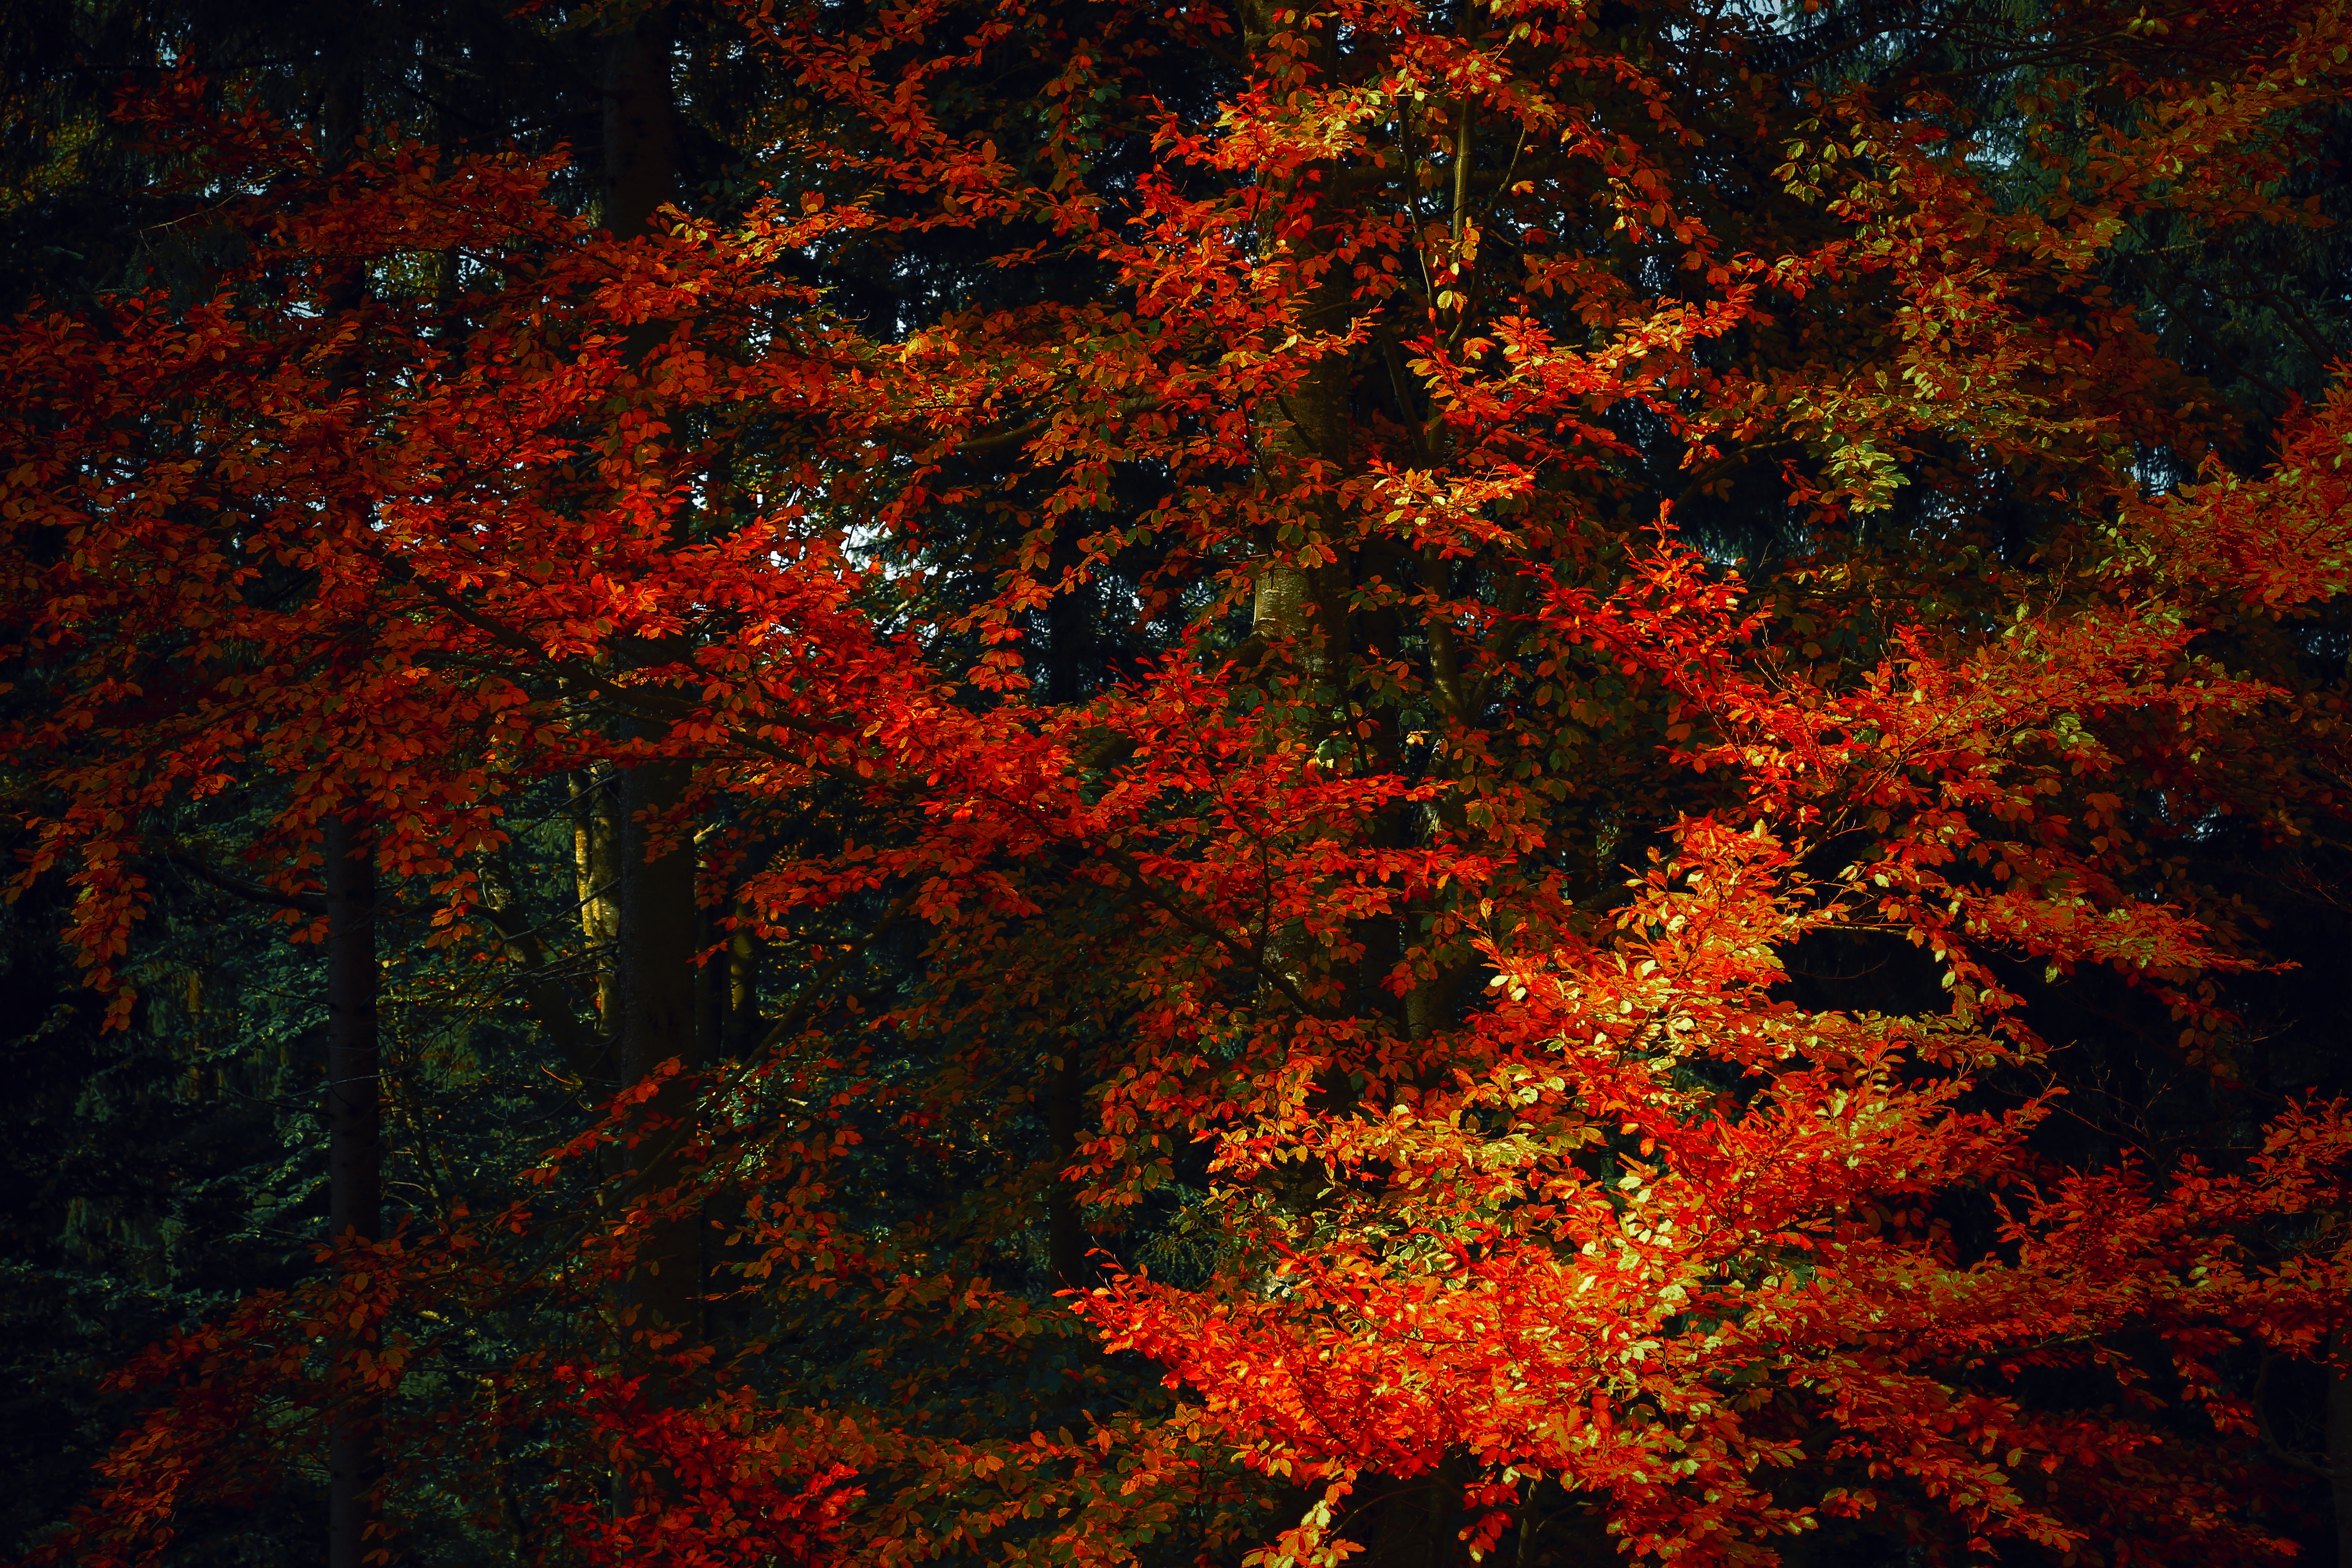 shadows, leaves, autumn paints, nature, trees, autumn, branches, autumn colors